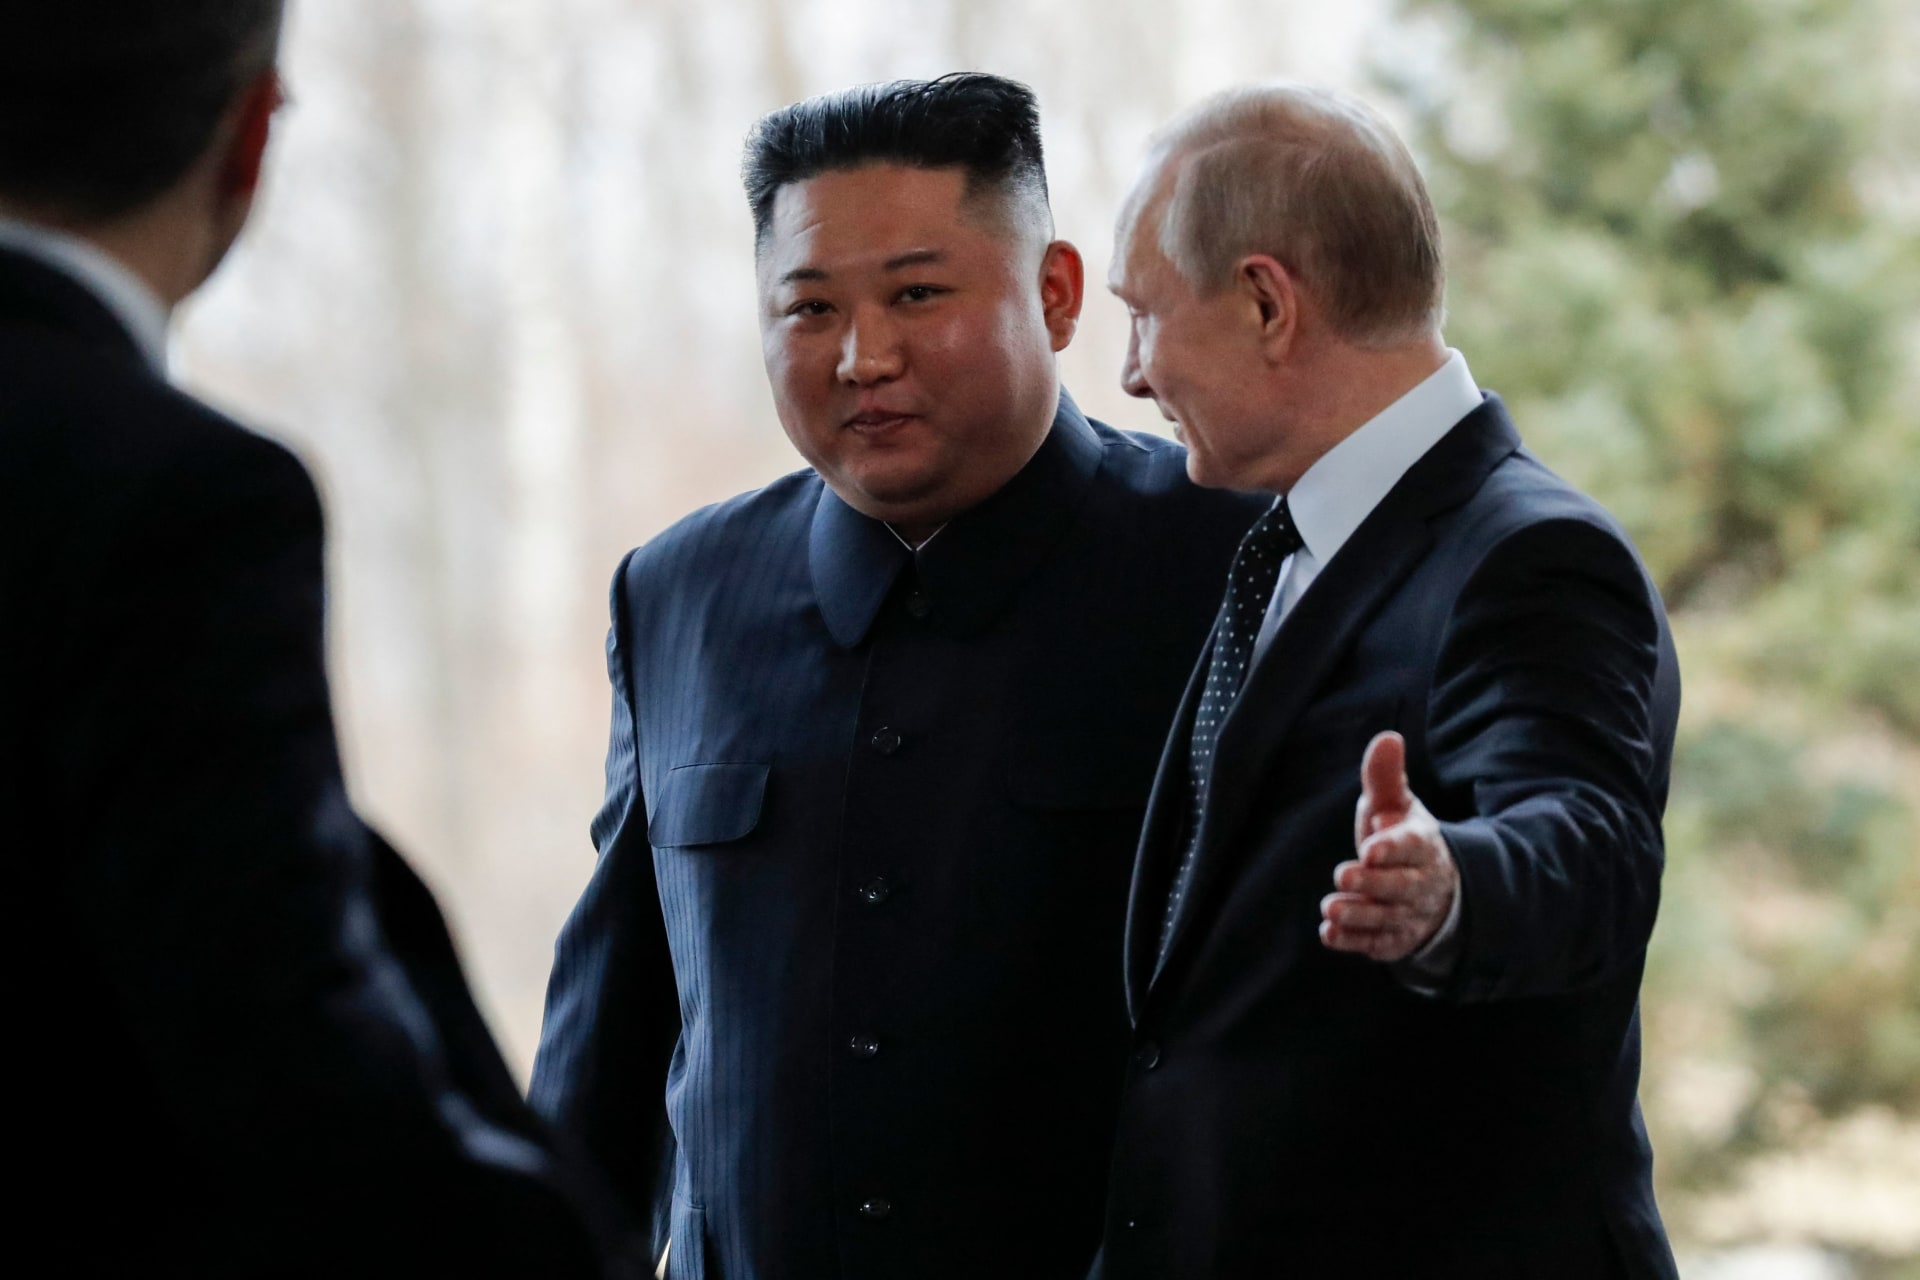 أمريكا تعلن توقعاتها بشأن اللقاء المحتمل بين بوتين وكيم جونغ أون